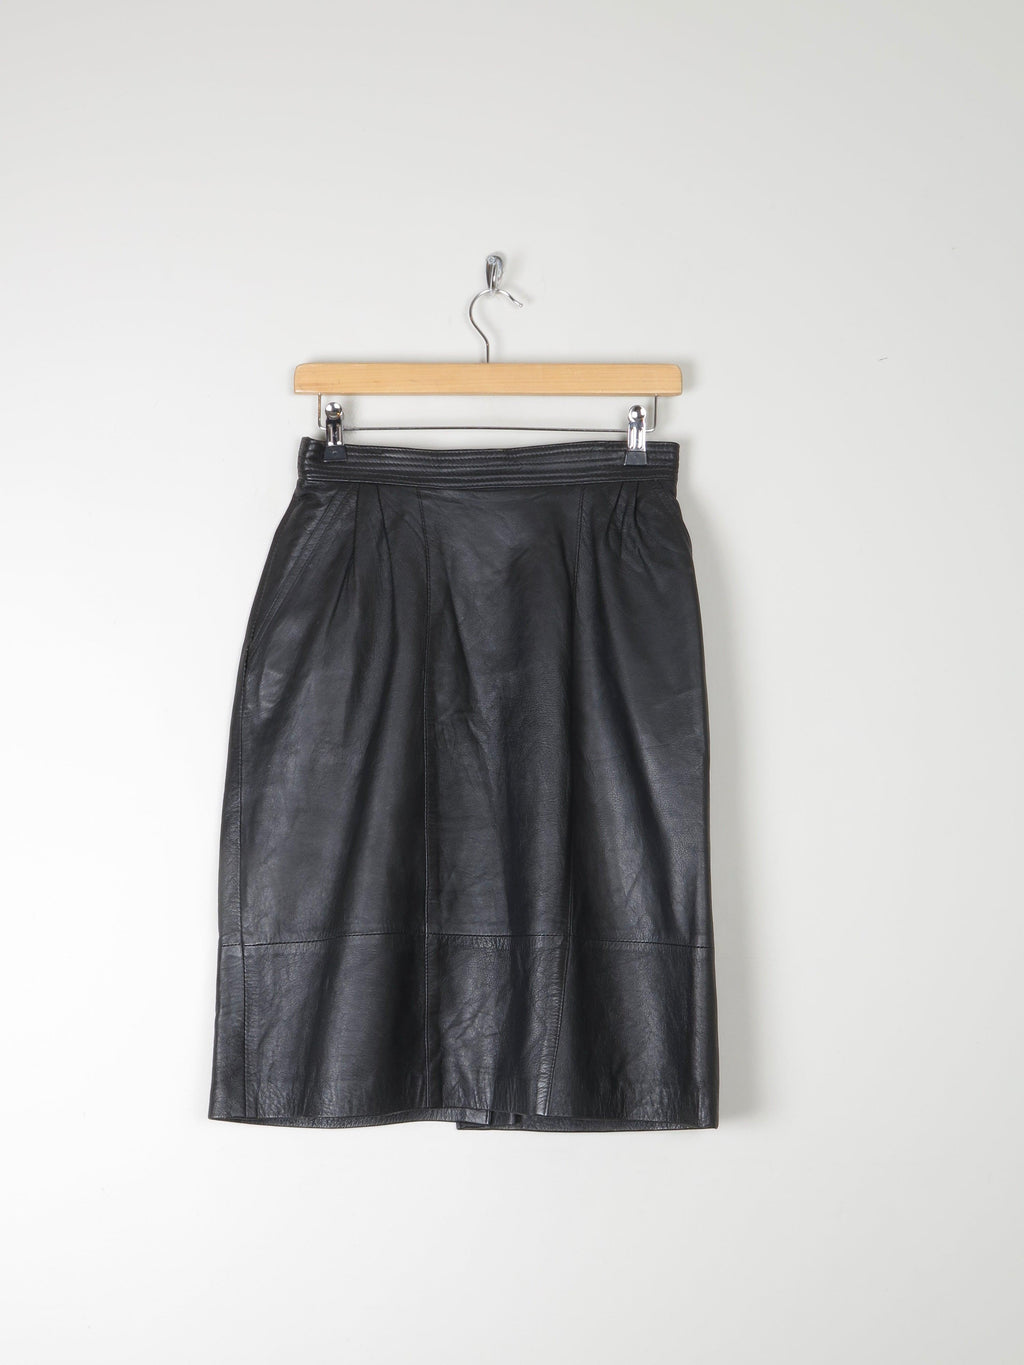 Black Leather Vintage Short Skirt 28" S - The Harlequin